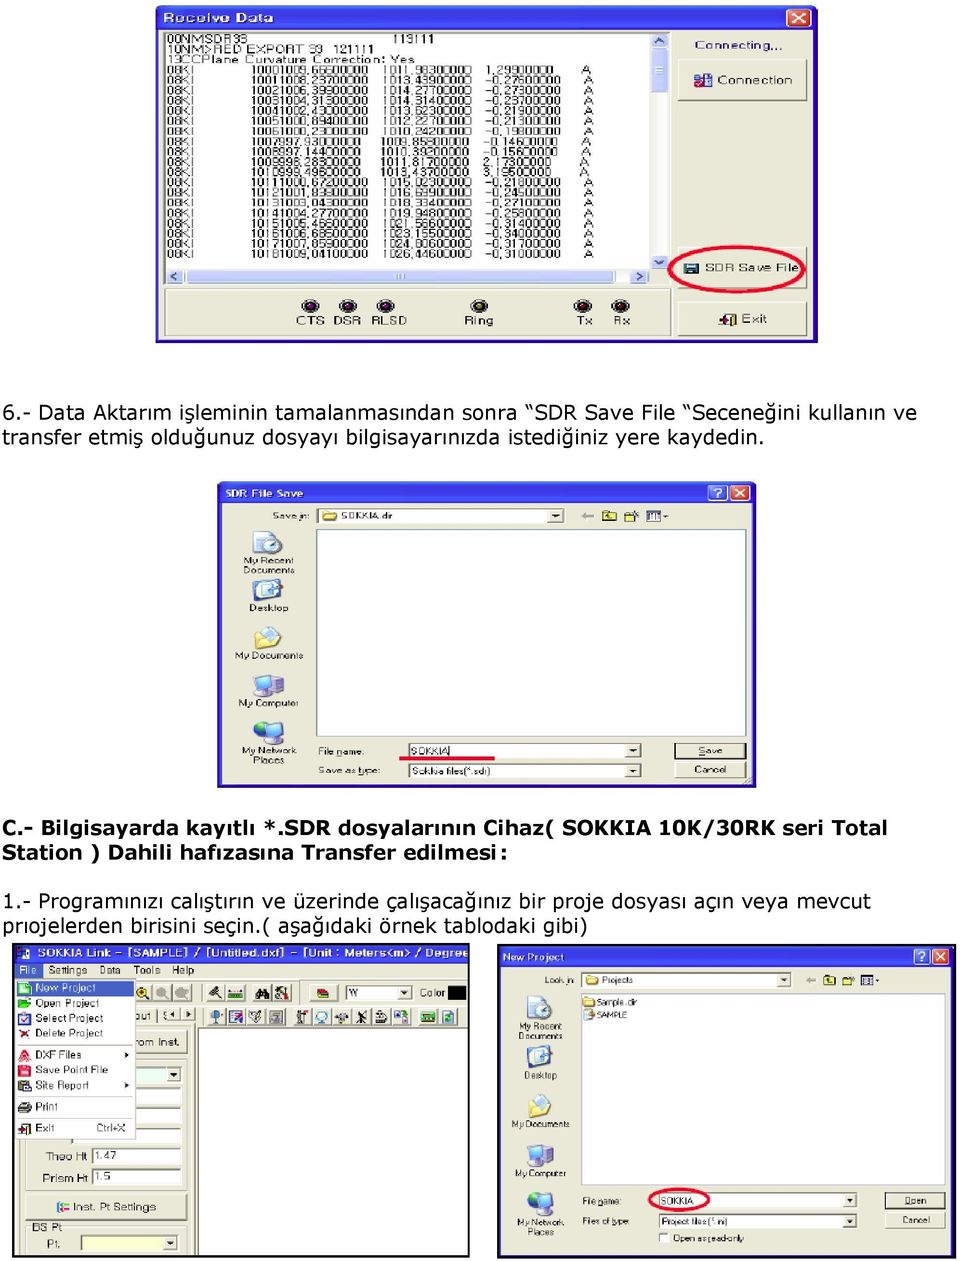 SDR dosyalarının Cihaz( SOKKIA 10K/30RK seri Total Station ) Dahili hafızasına Transfer edilmesi : 1.